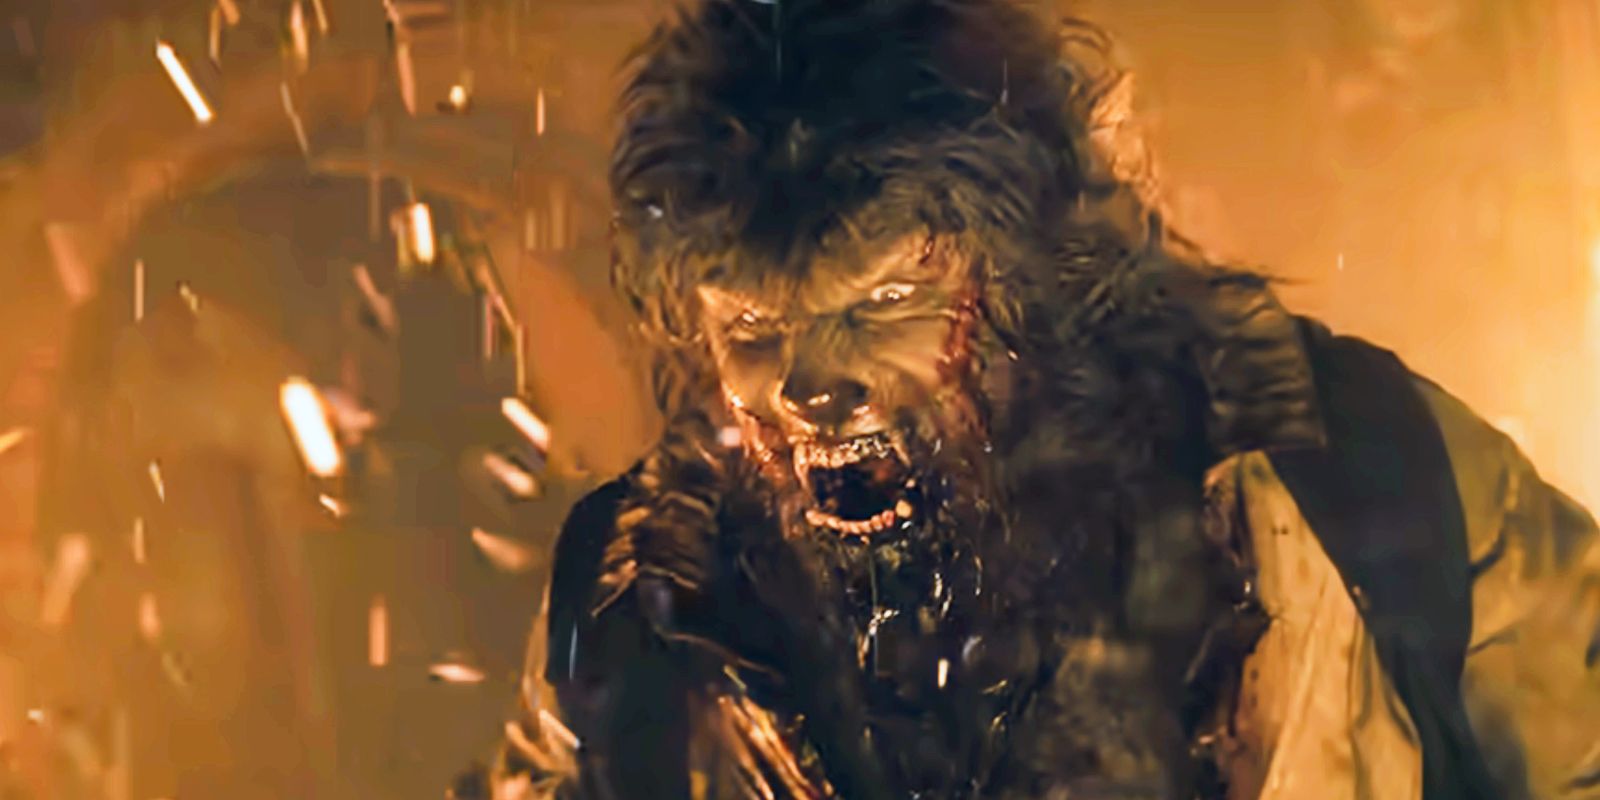 La fecha de lanzamiento del reinicio de Wolf Man de Blumhouse se retrasó después del inicio de la filmación